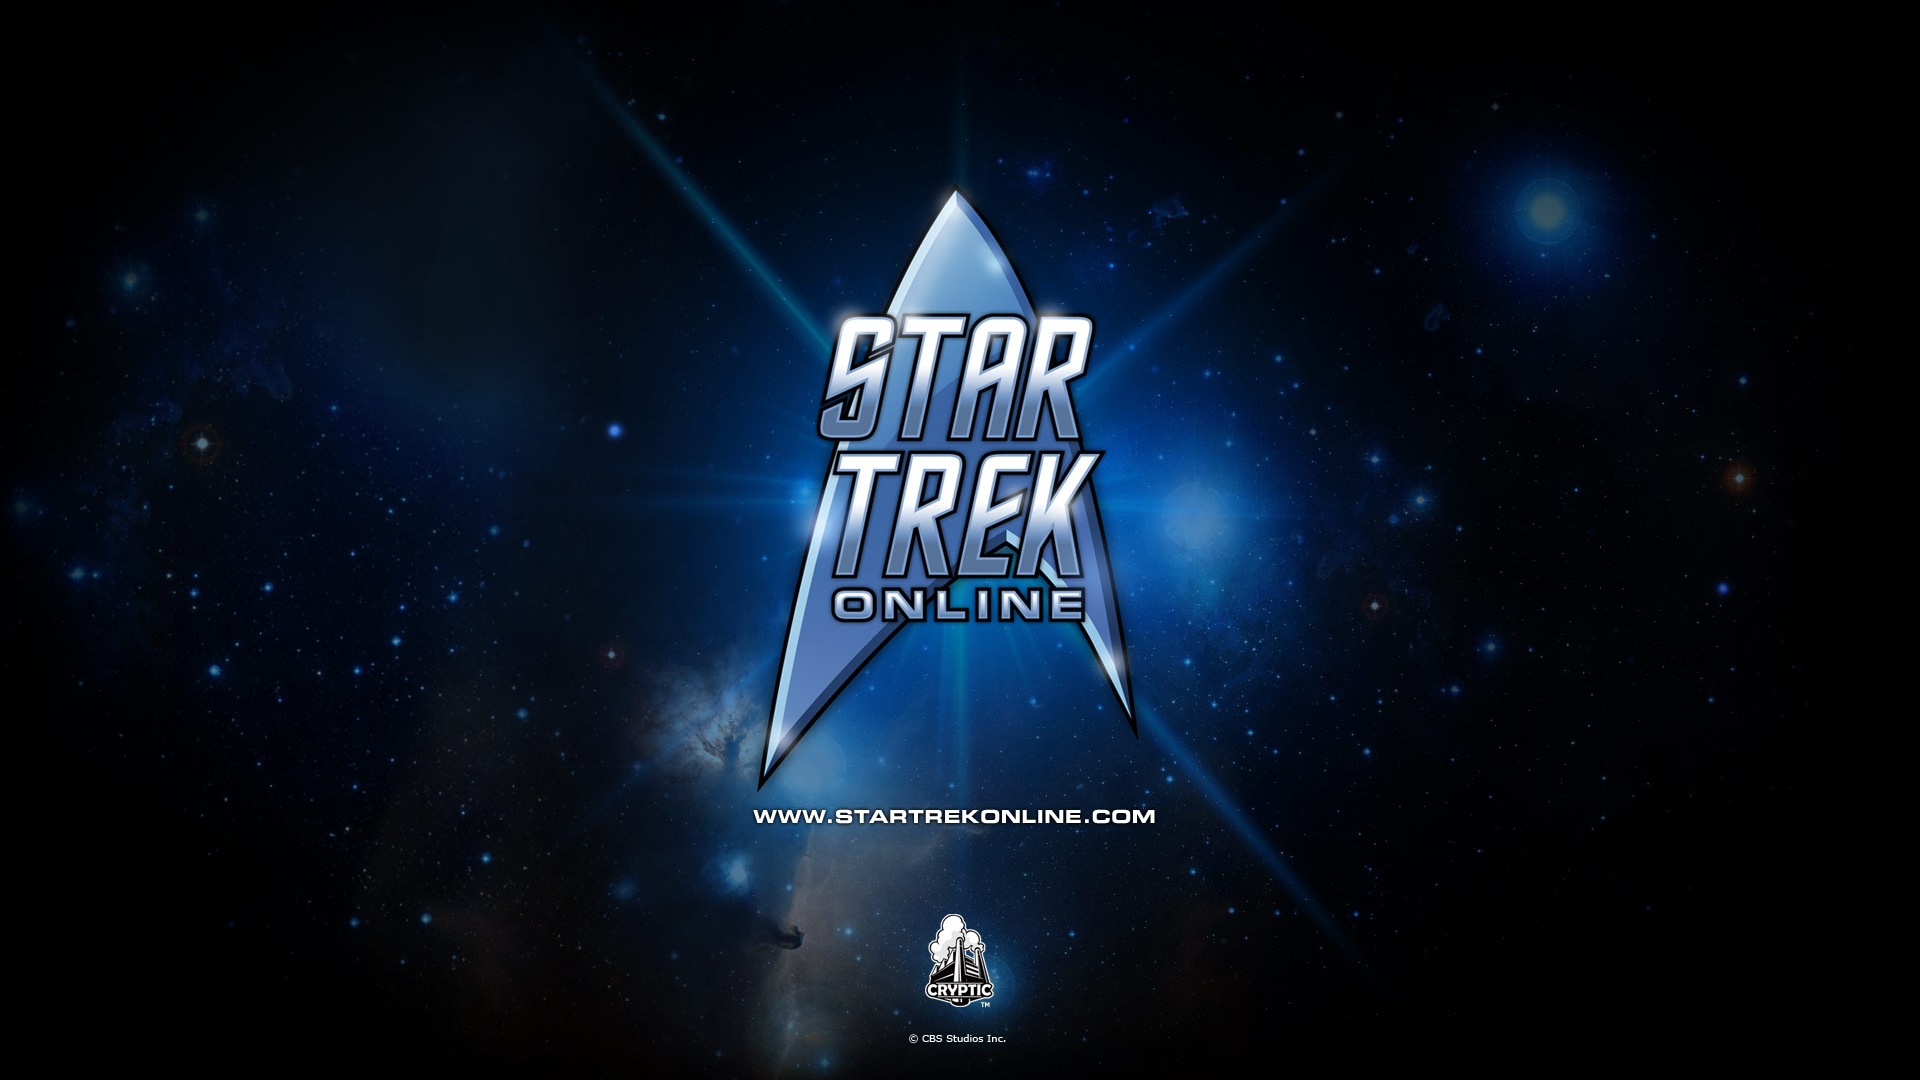 Star Trek Online 星际迷航在线 游戏高清壁纸19 - 1920x1080